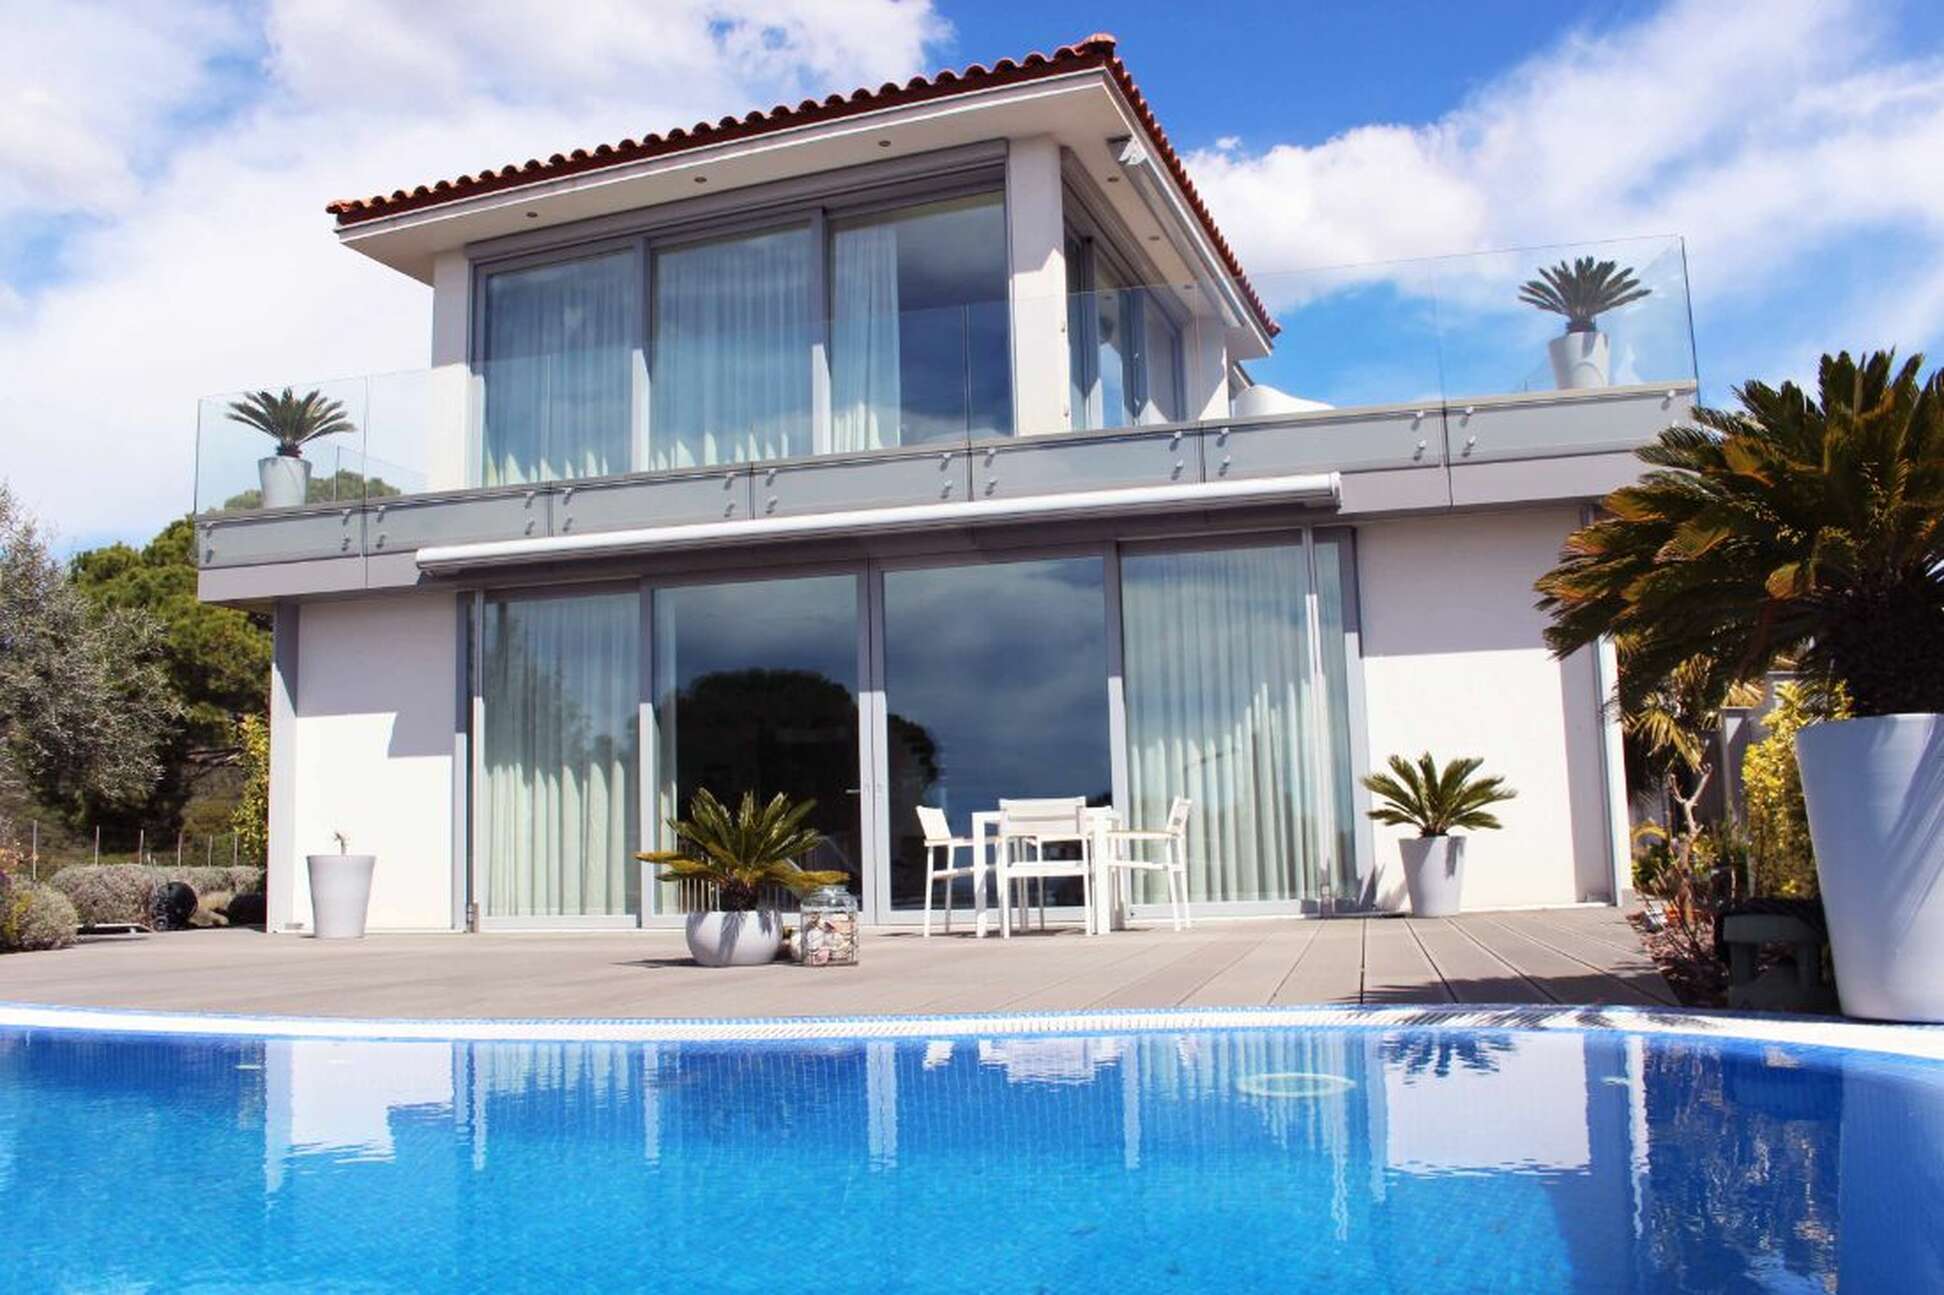 Exclusiva casa amb impressionants vistes al mar a Tossa de Mar, disponible ara.